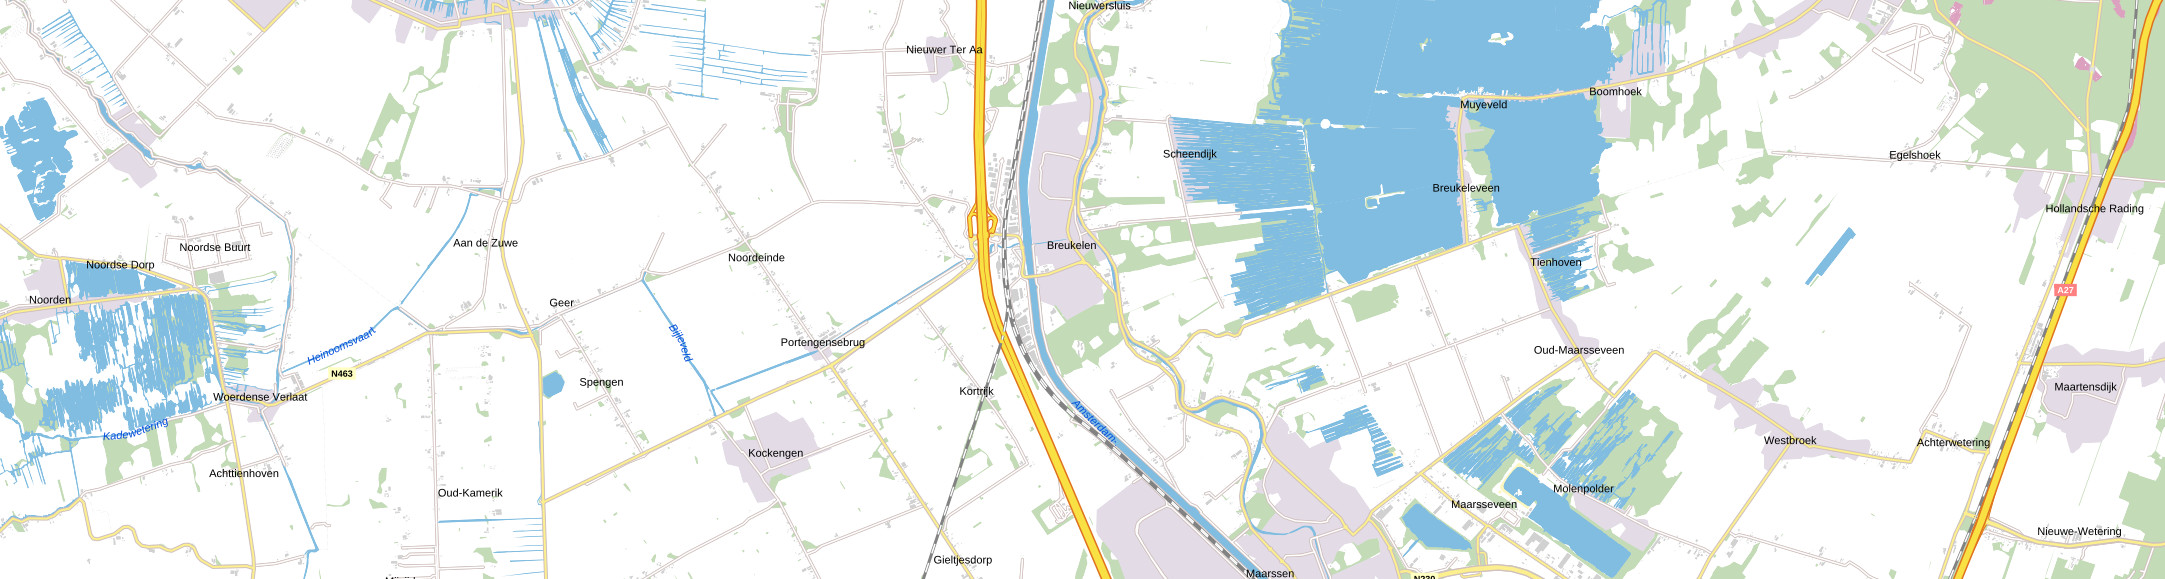 Marskramerpad Rijnsaterwoude – Noorden – Breukelen – Hollandsche Rading (LAW3, 2022)